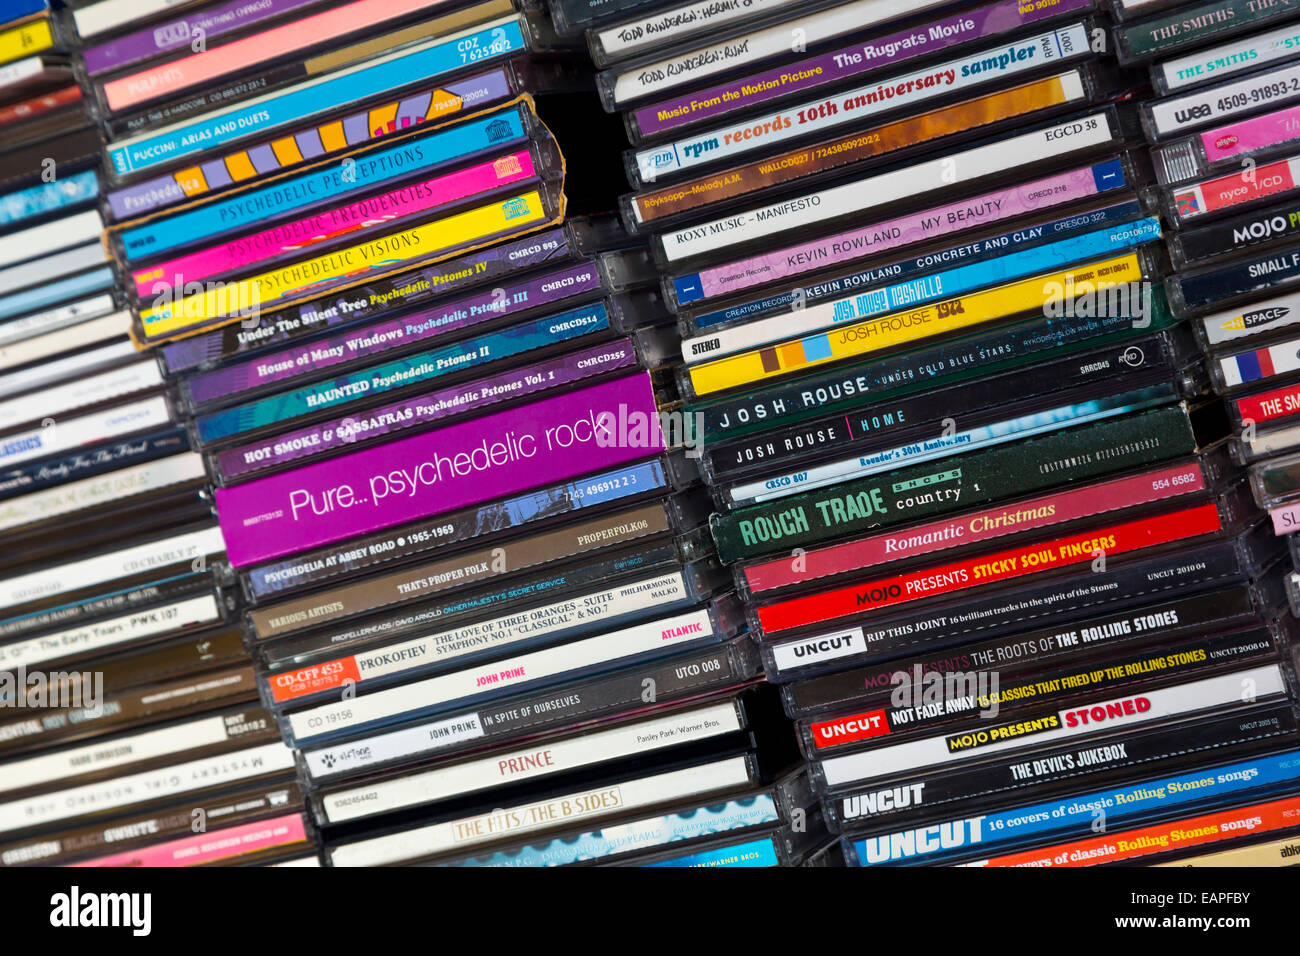 Grande collection de CD de musique empilés dans l'ordre alphabétique Banque D'Images